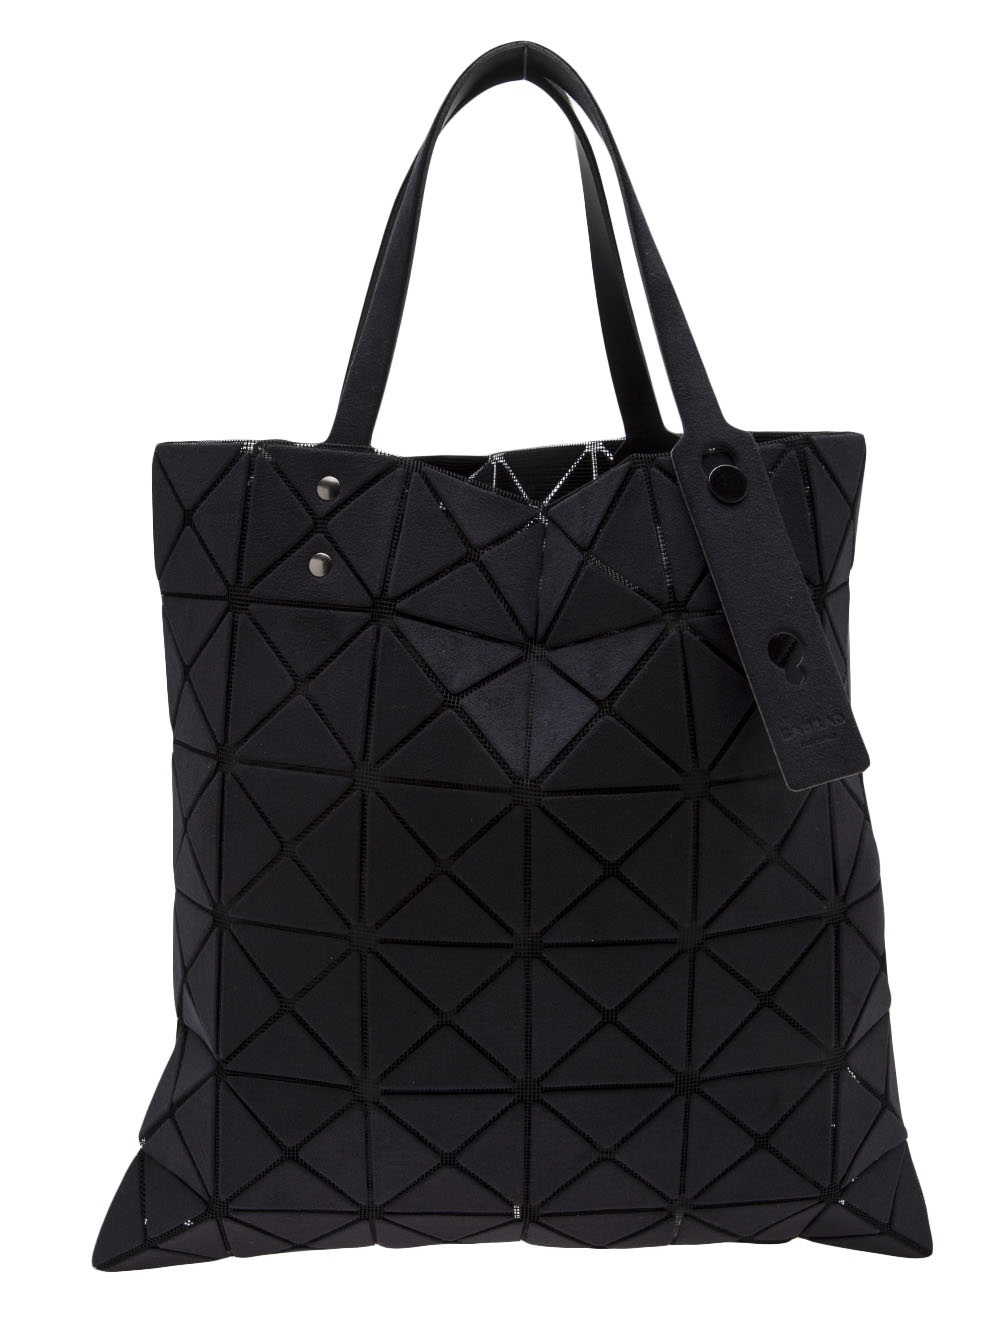 Bao Bao Issey Miyake Prism Tote Bag in Black | Lyst